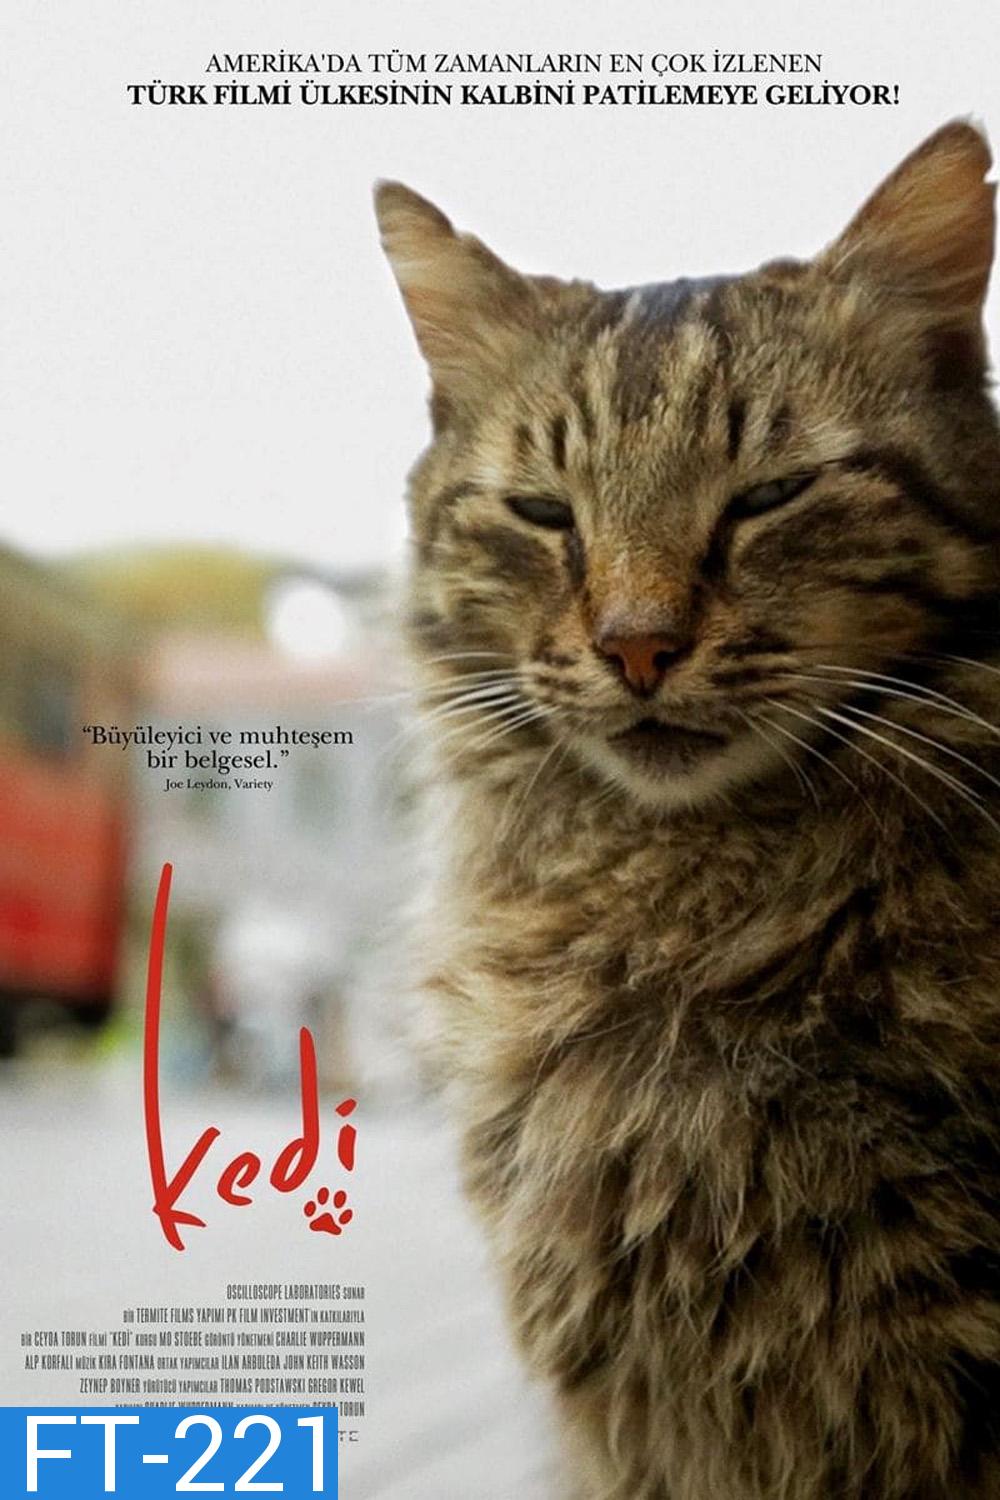 Kedi เมืองแมว (2016) สารคดีแมวเมืองอิสตัลบูล ทาสแมวต้องไม่พลาด!!